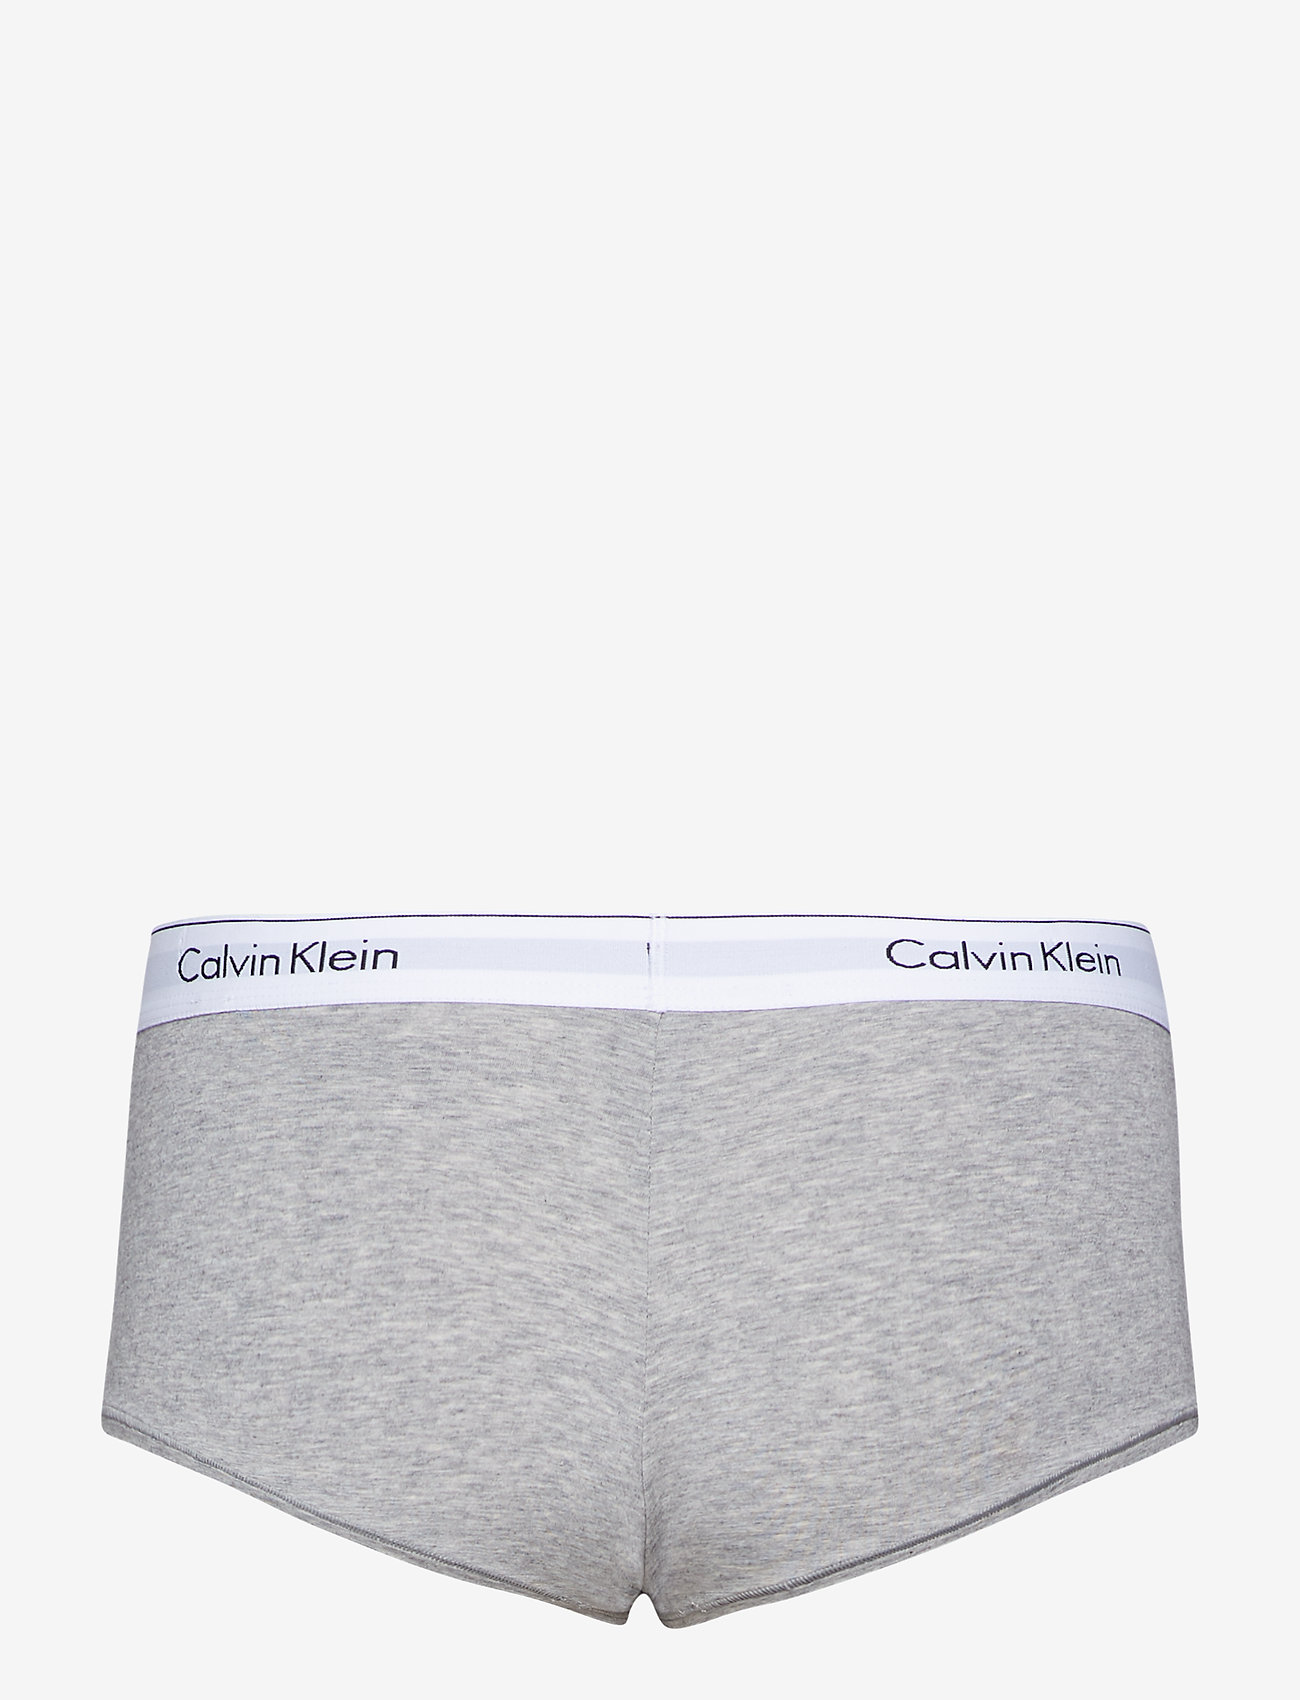 boy shorts underwear calvin klein